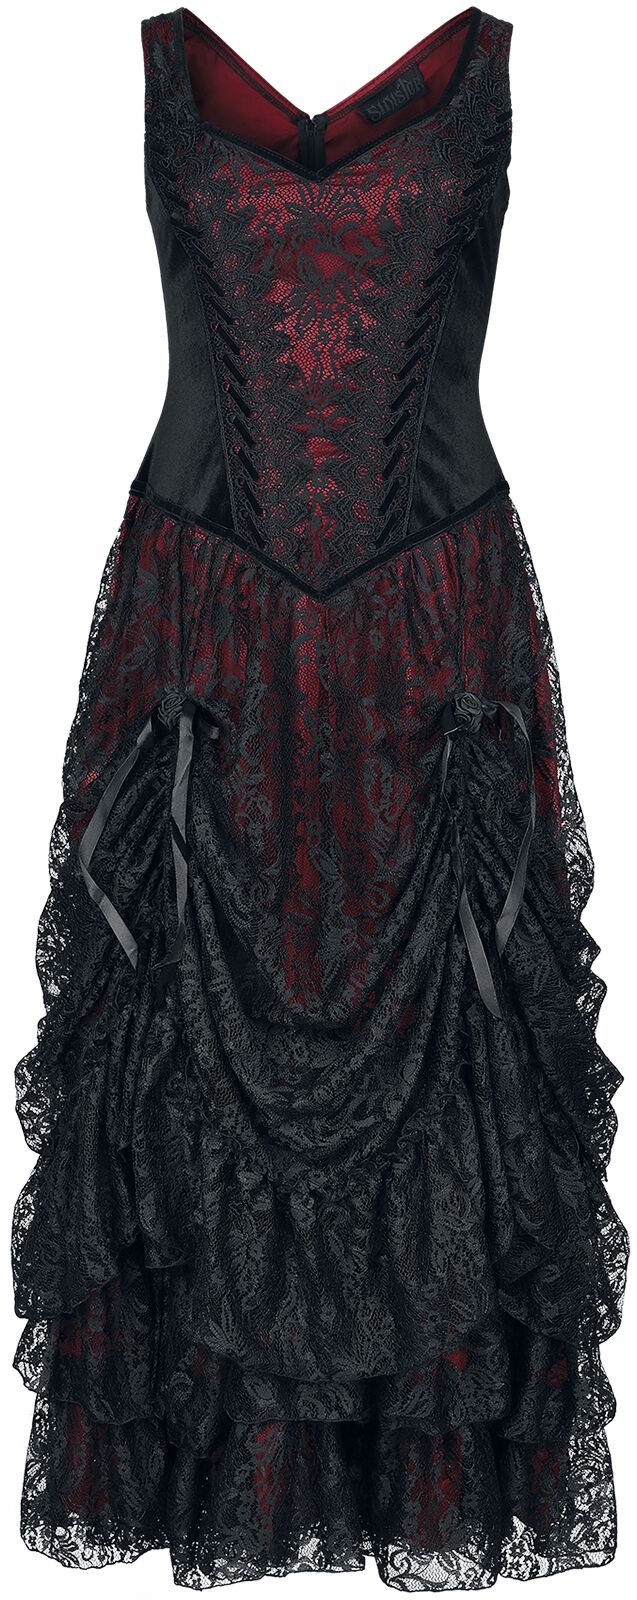 Sinister Gothic Longdress Langes Kleid schwarz rot in L